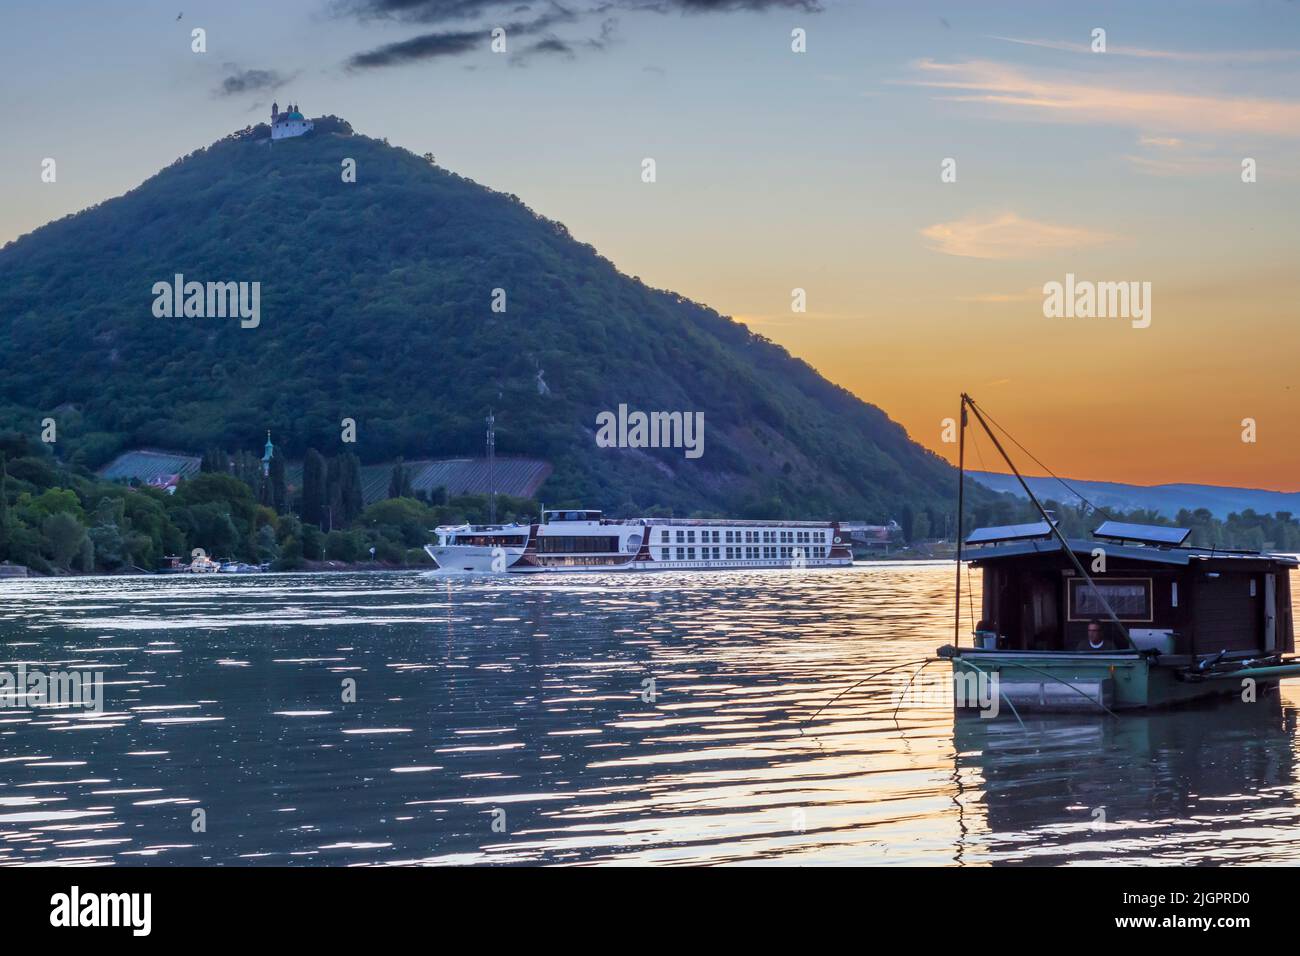 Wien, Vienne: Coucher de soleil sur le Donau (Danube), vue sur la montagne Leopoldsberg (avec église), bateau Daubel avec filet de pêche, bateau de croisière en 19. Dö Banque D'Images